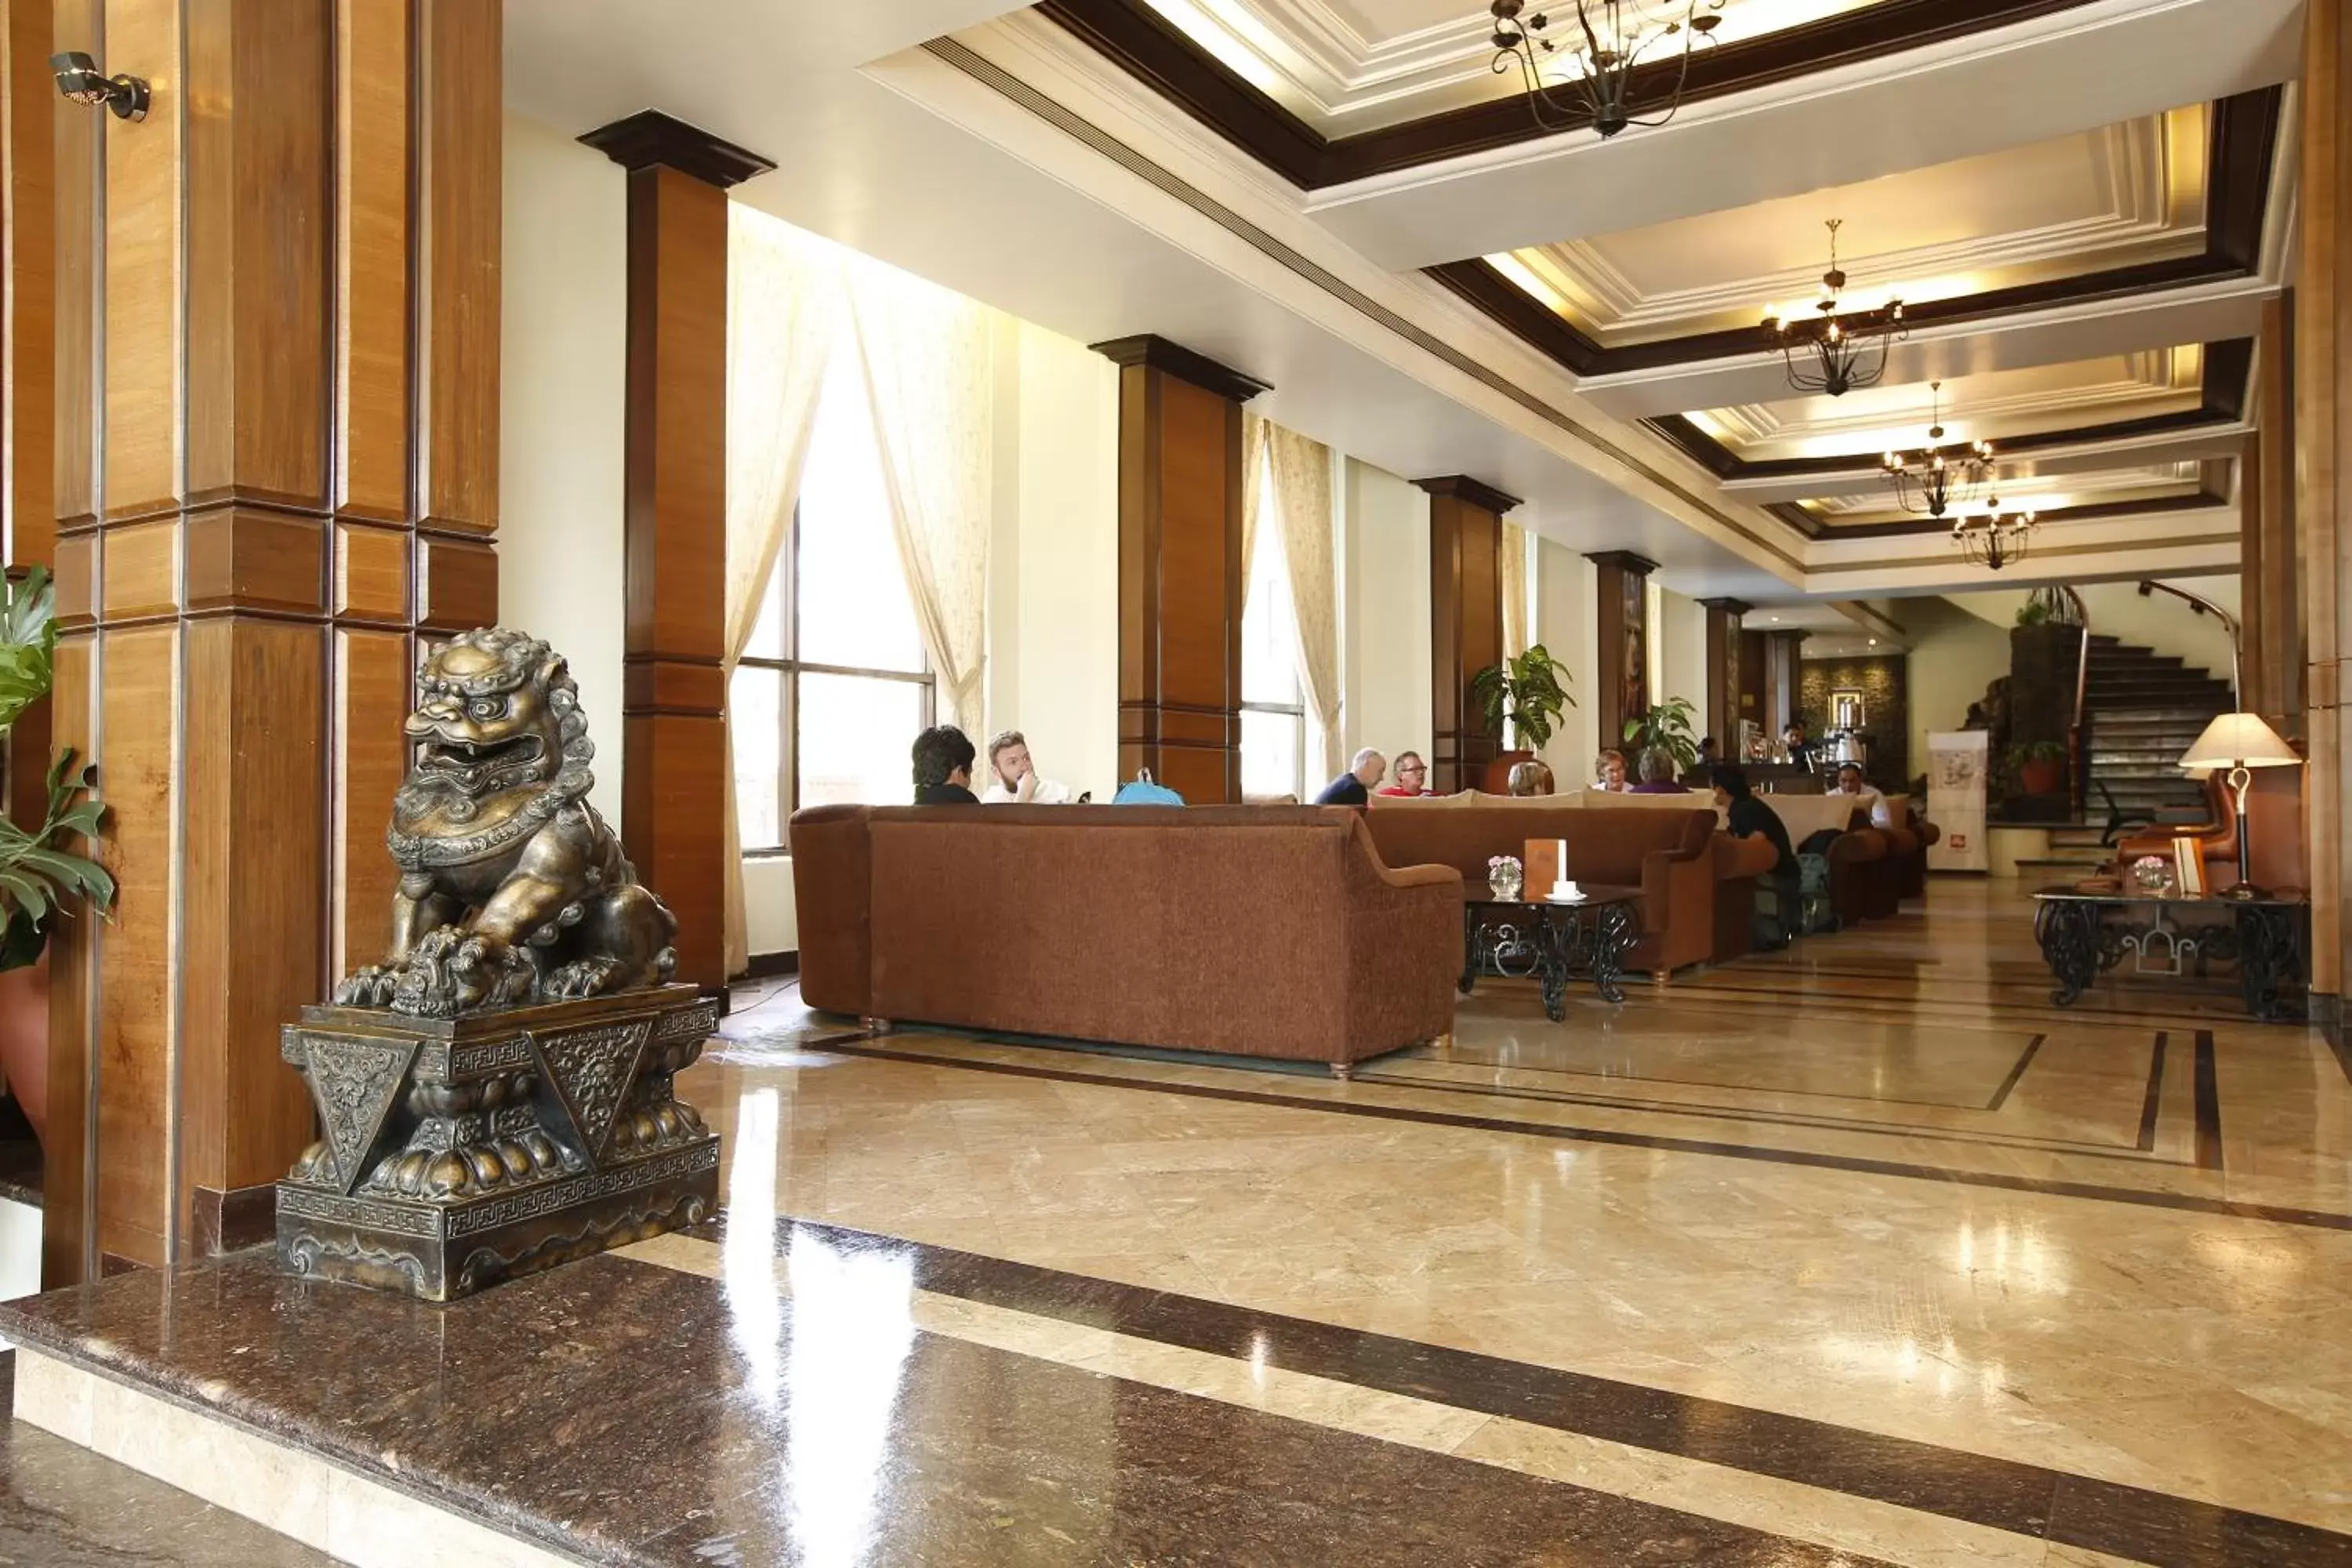 Lobby or reception, Lobby/Reception in Royal Singi Hotel